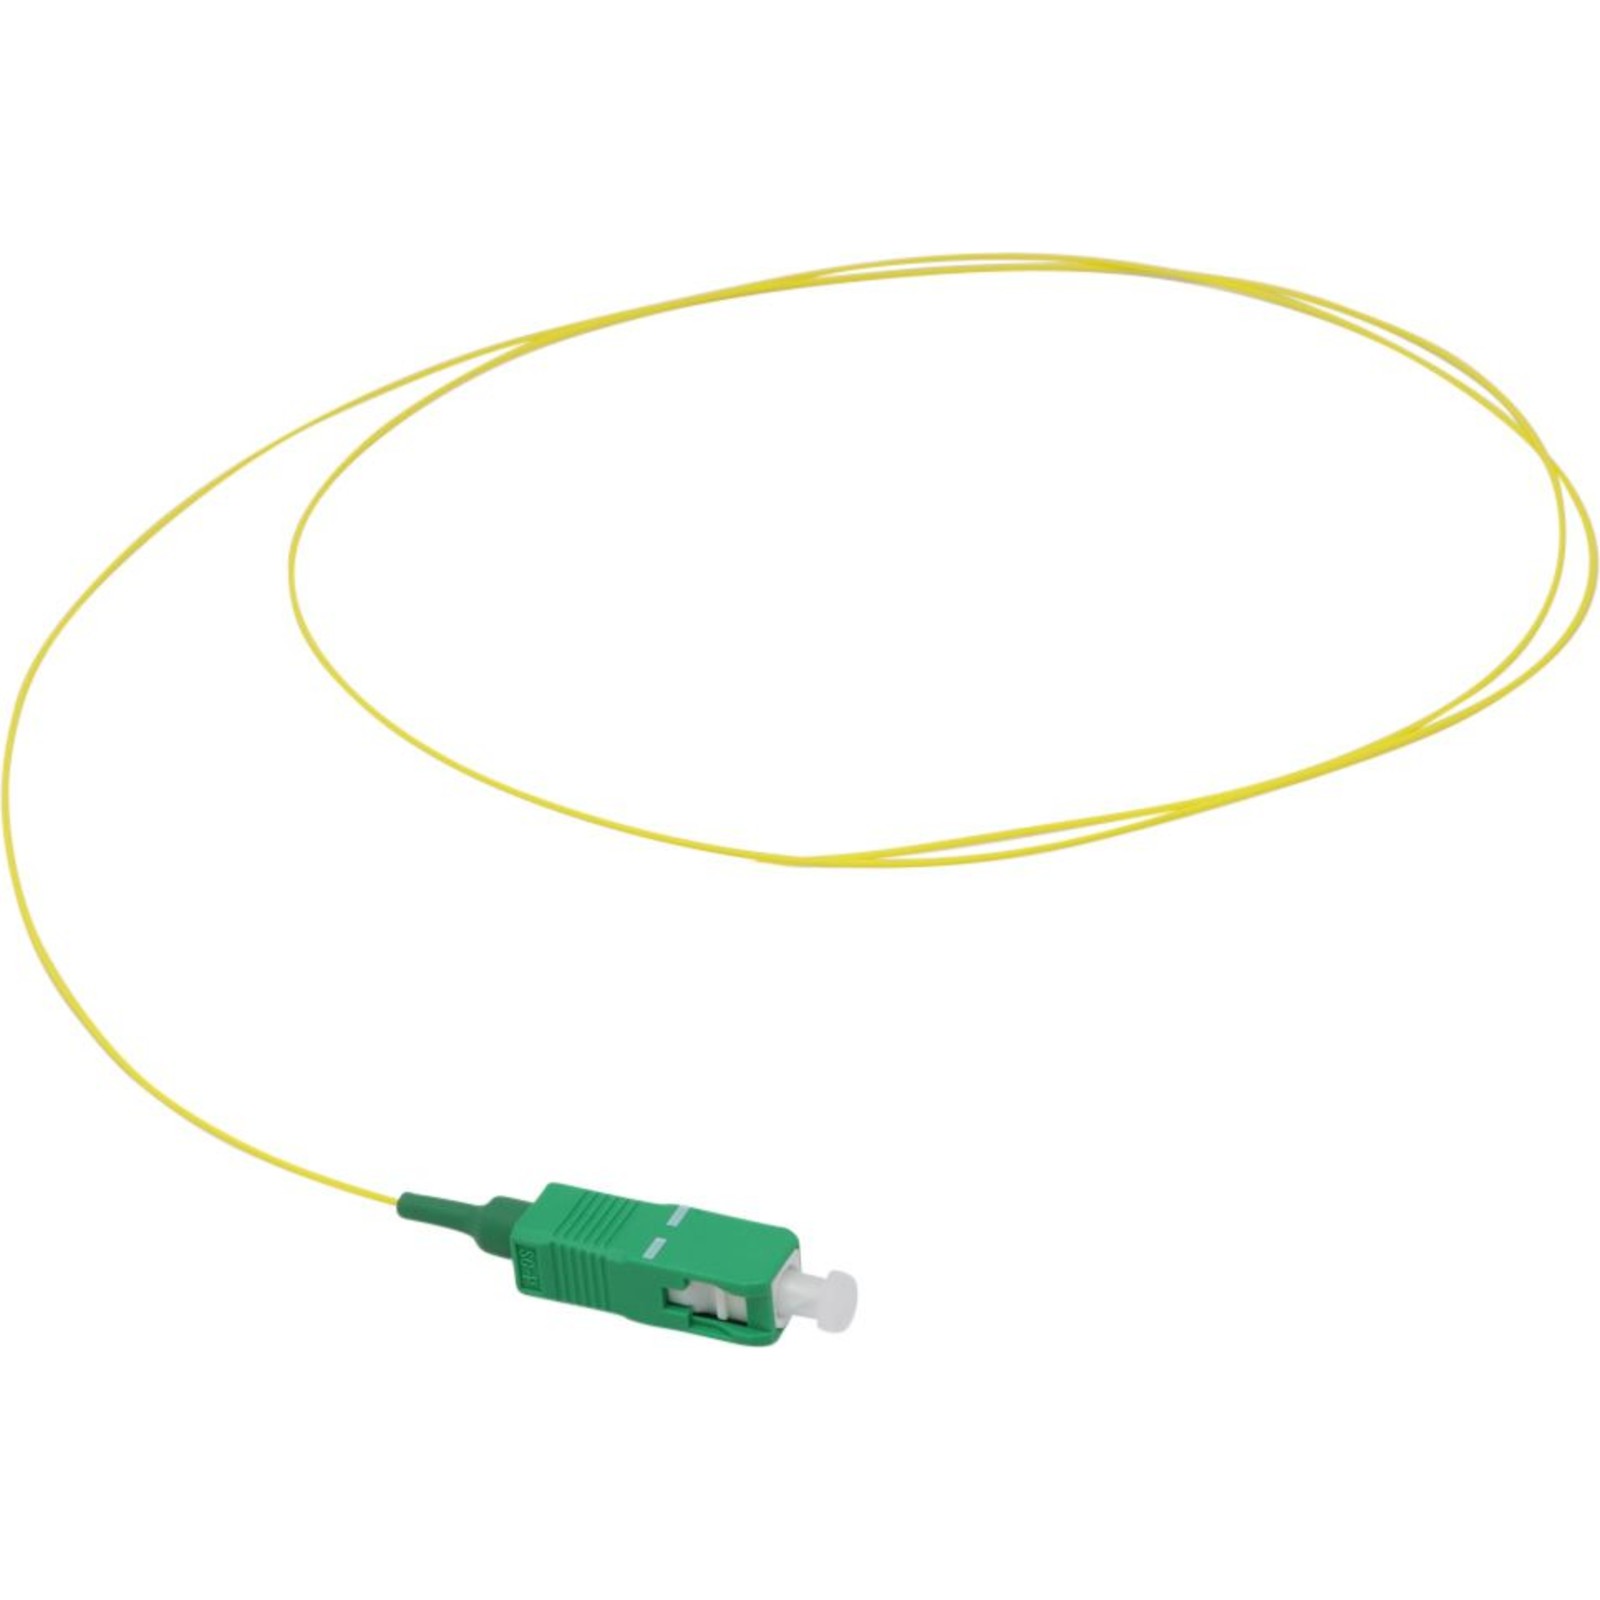 Pigtail fibre Enbeam OS2 9 125 SC APC jaune - 1 m